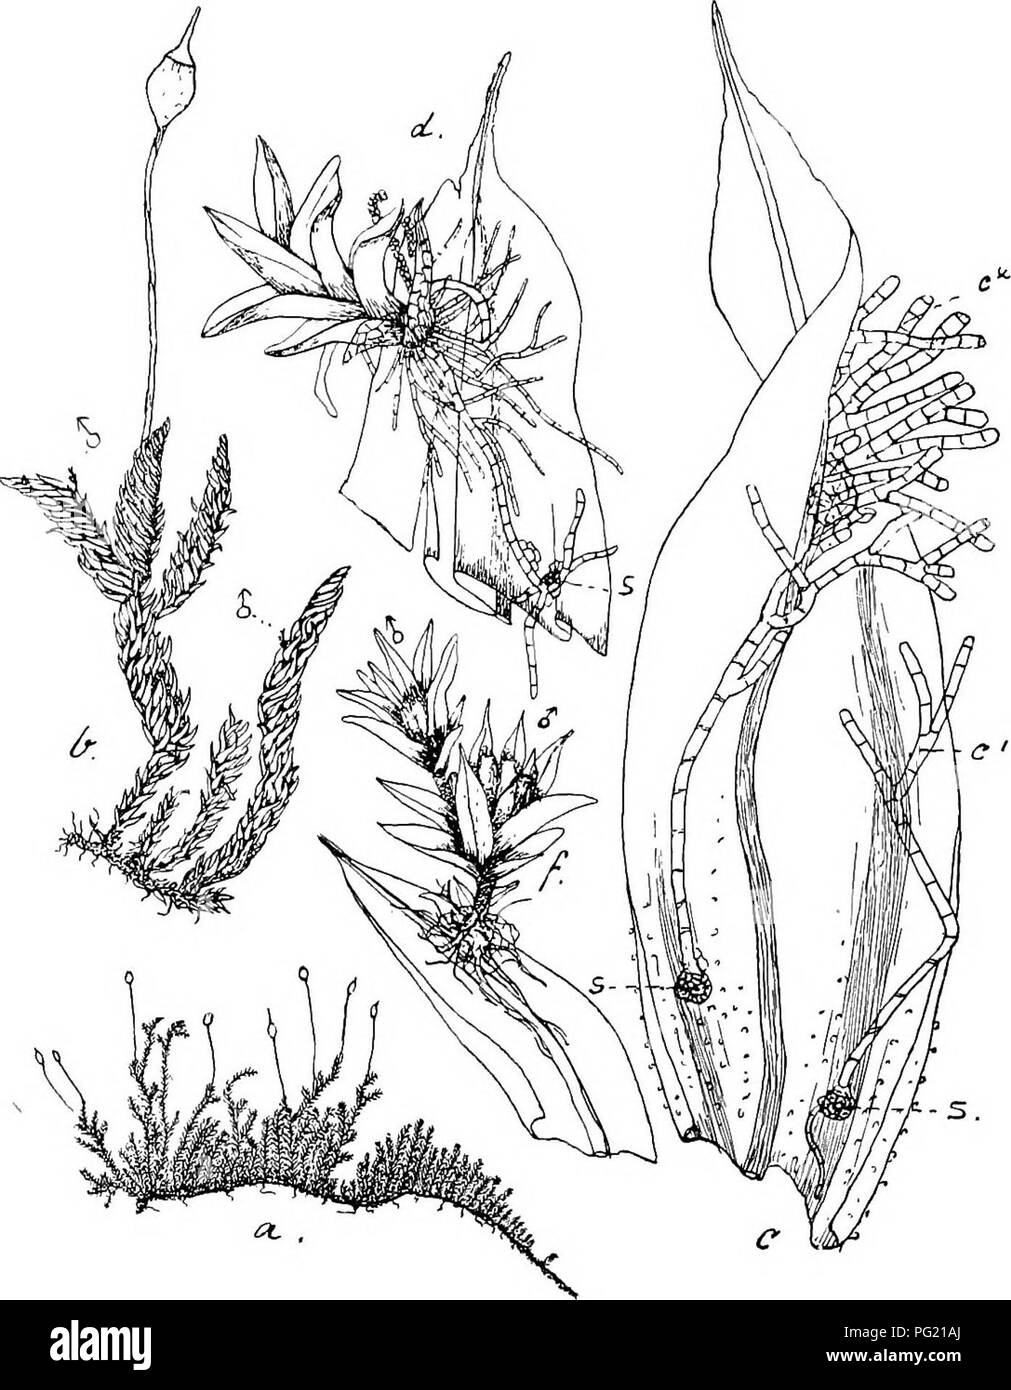 . Flore de Buitenzorg. Botany. 425 Schlotheimia teres Dz. et Mb., in Add. so. tiafc., 1844, II, p. 314. Exsiccata: M. Fleischer, Muse. Archip. Ind., N°. 132 (1900). Zweihausig (phyllodiScisch). d&quot; Pflanzen beblattert, winzig Kk. 78.. Macromitri Blumei Nees. u. Habitusbild (nat. Grosse); i. Desgl. mit d&quot; Bluten i. I,. Stengelblatt mit s., keimenden Spoi'en, c'. und c'., Fadenprotonema, aus dcm sich die (/ Planze entwickelt 12.. d. Jange rf&quot; Pflanze auf del- Blattspitze sicli entwiokelnd ijS..: s. Spore. /. Aasgebildete' (/ Zwergpflanze mit Anthendien -2i. klein, ohne Stengelchen, Stock Photo